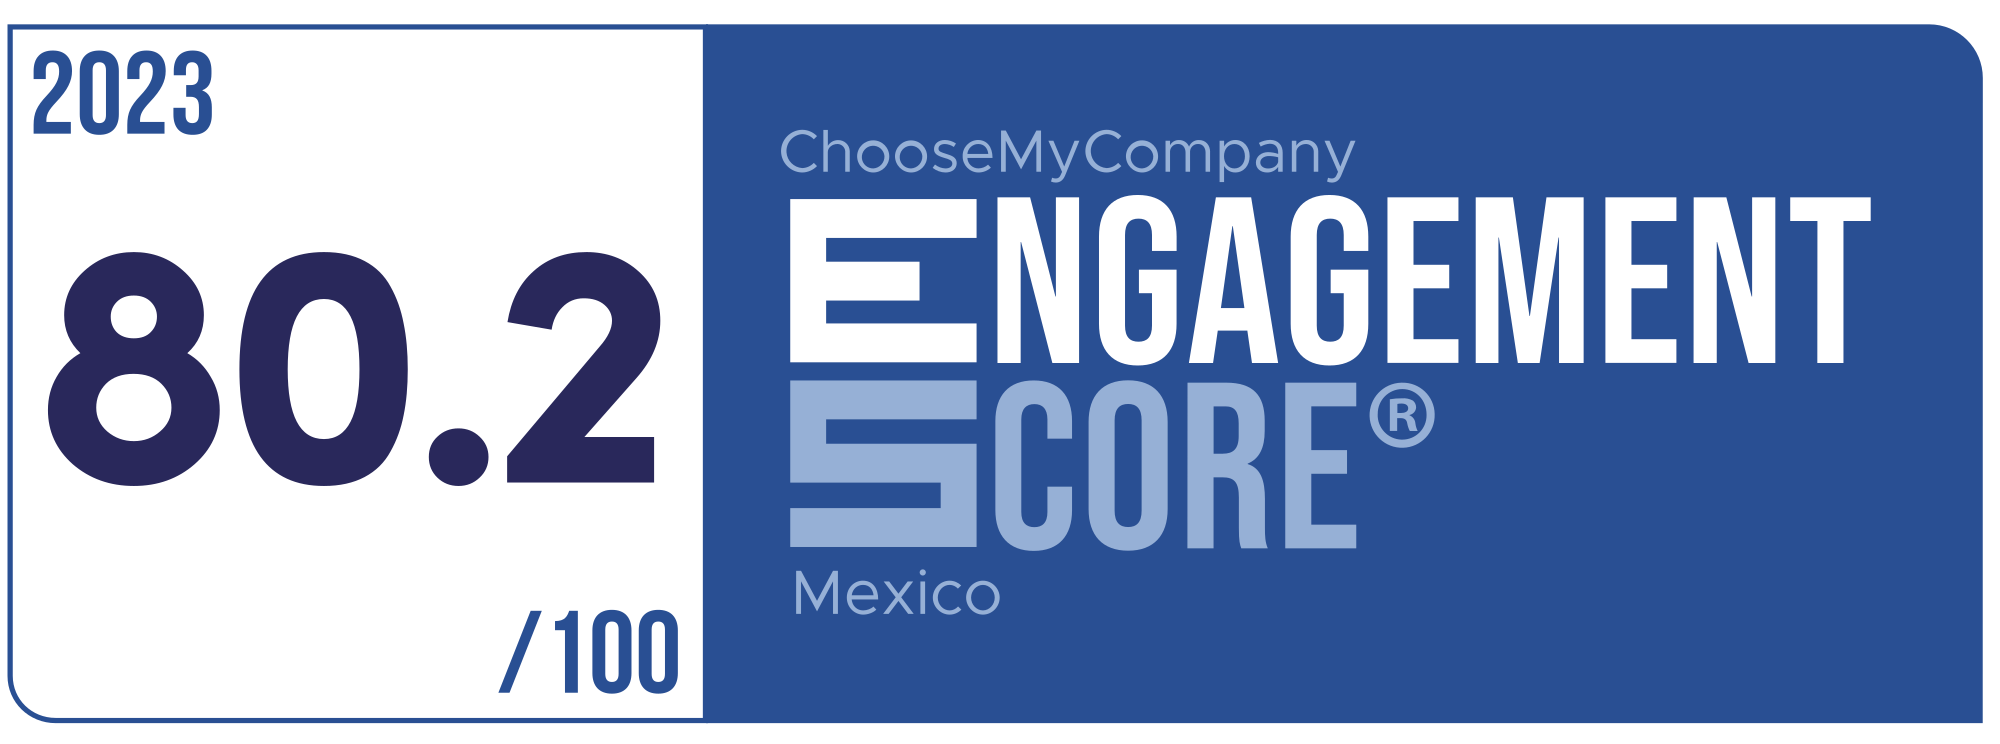 Label Engagement Score 2023 Mexico